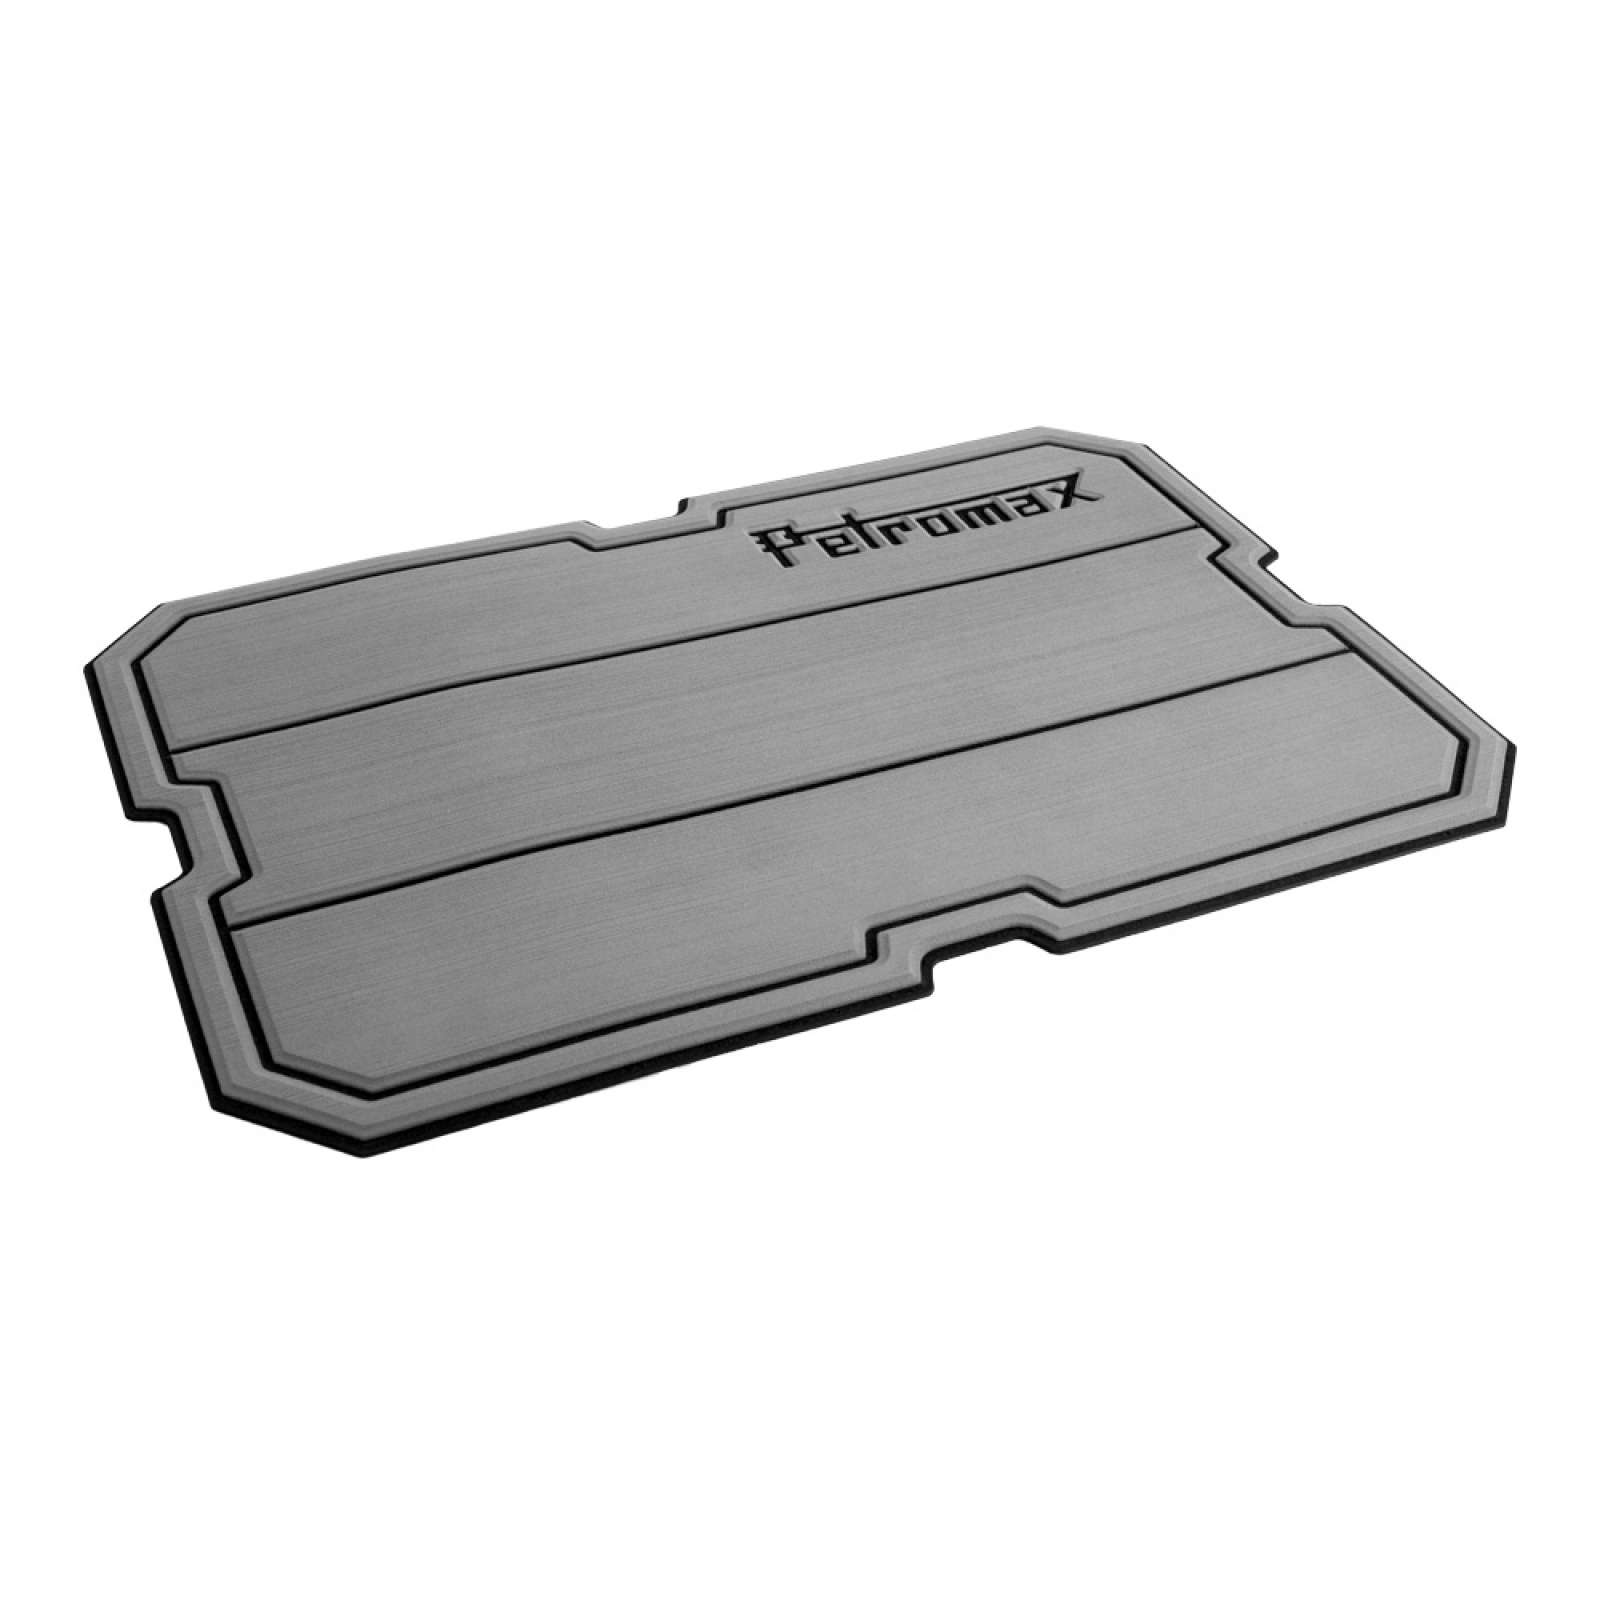 Petromax Haft-Auflage für Kühlbox kx50 Grau mit Linien und Petromax Schriftzug für 50 Liter Box